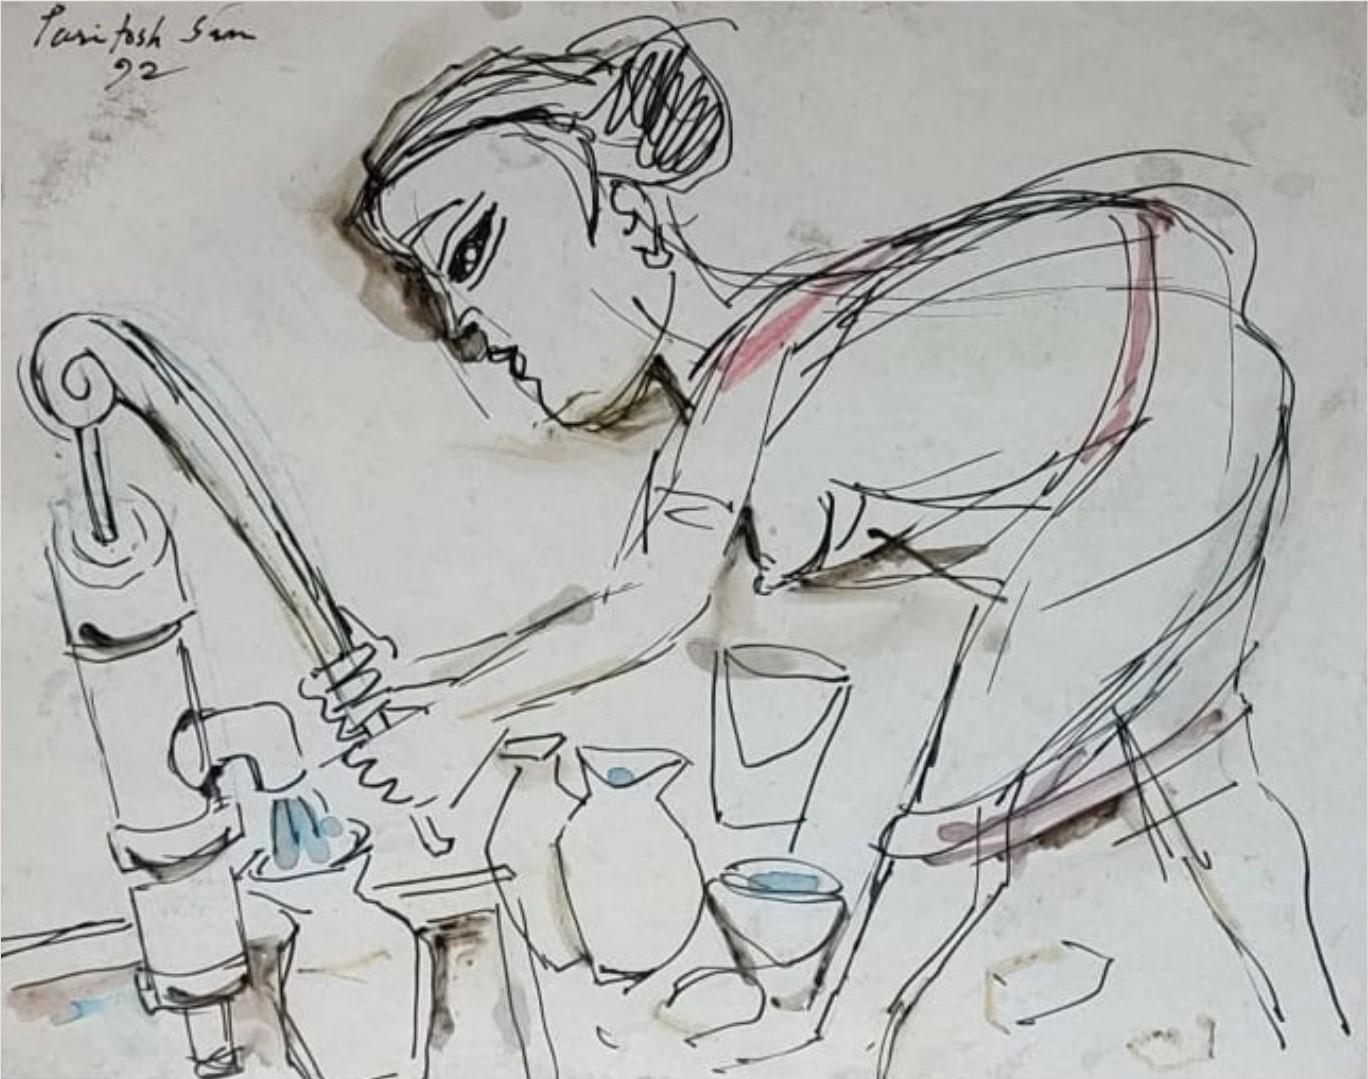 Paritosh Sen - Ohne Titel (Frau am Rohrbrunnen)
Feder & Tinte auf Papier
8,6 x 11 Zoll, 1992
( Gerahmt & Geliefert )

Eine atemberaubende Arbeit in Farben auf "rot, blau Gold in Acryl auf Board, von teh großen indischen modernen Künstler des 20.